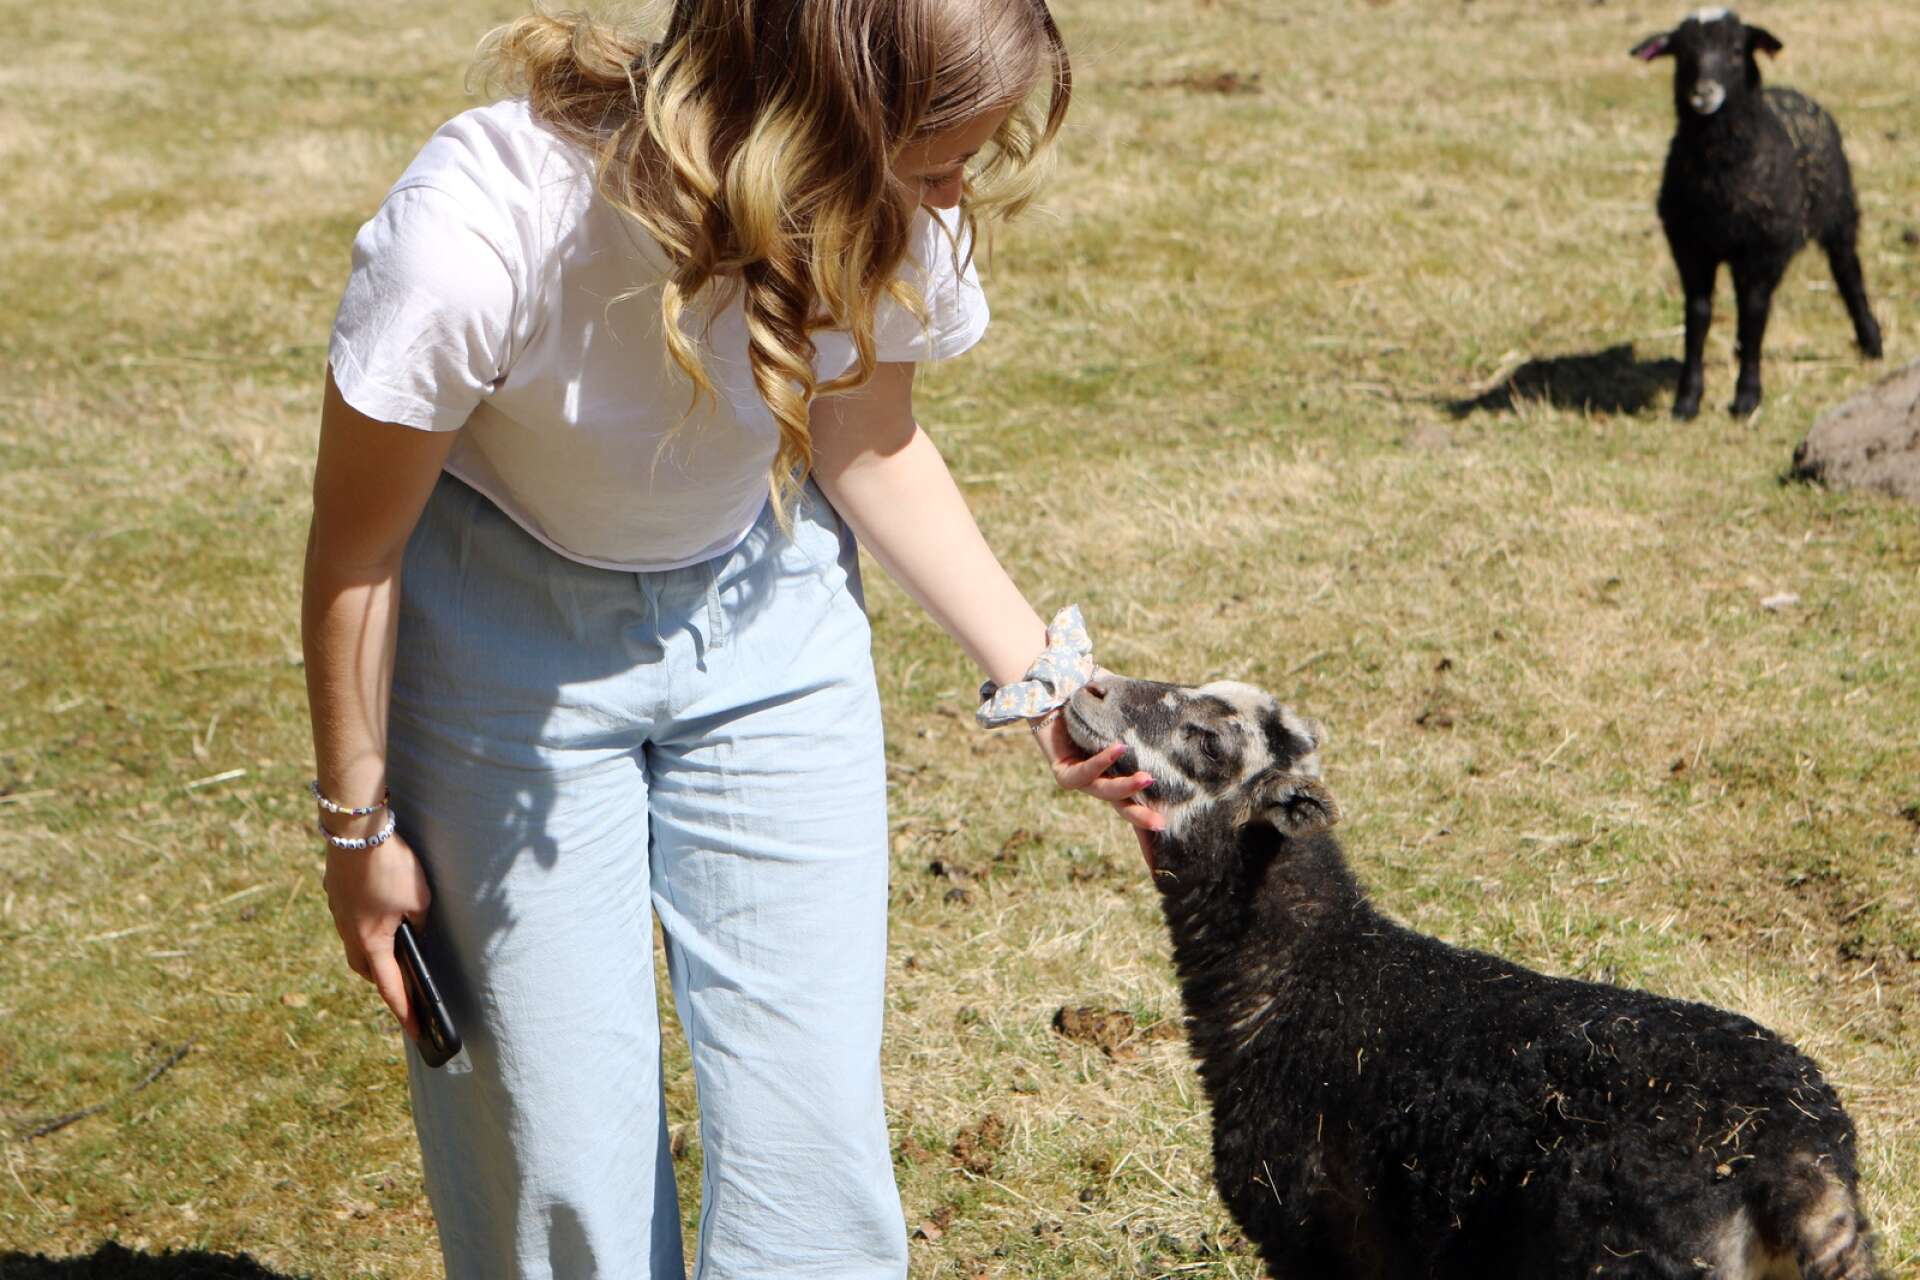 Majas familj har en hel del djur - bland annat lamm. Och att umgås med djur är något Maja uppskattar mycket. ”Det är väldigt mysigt och lugnande”.